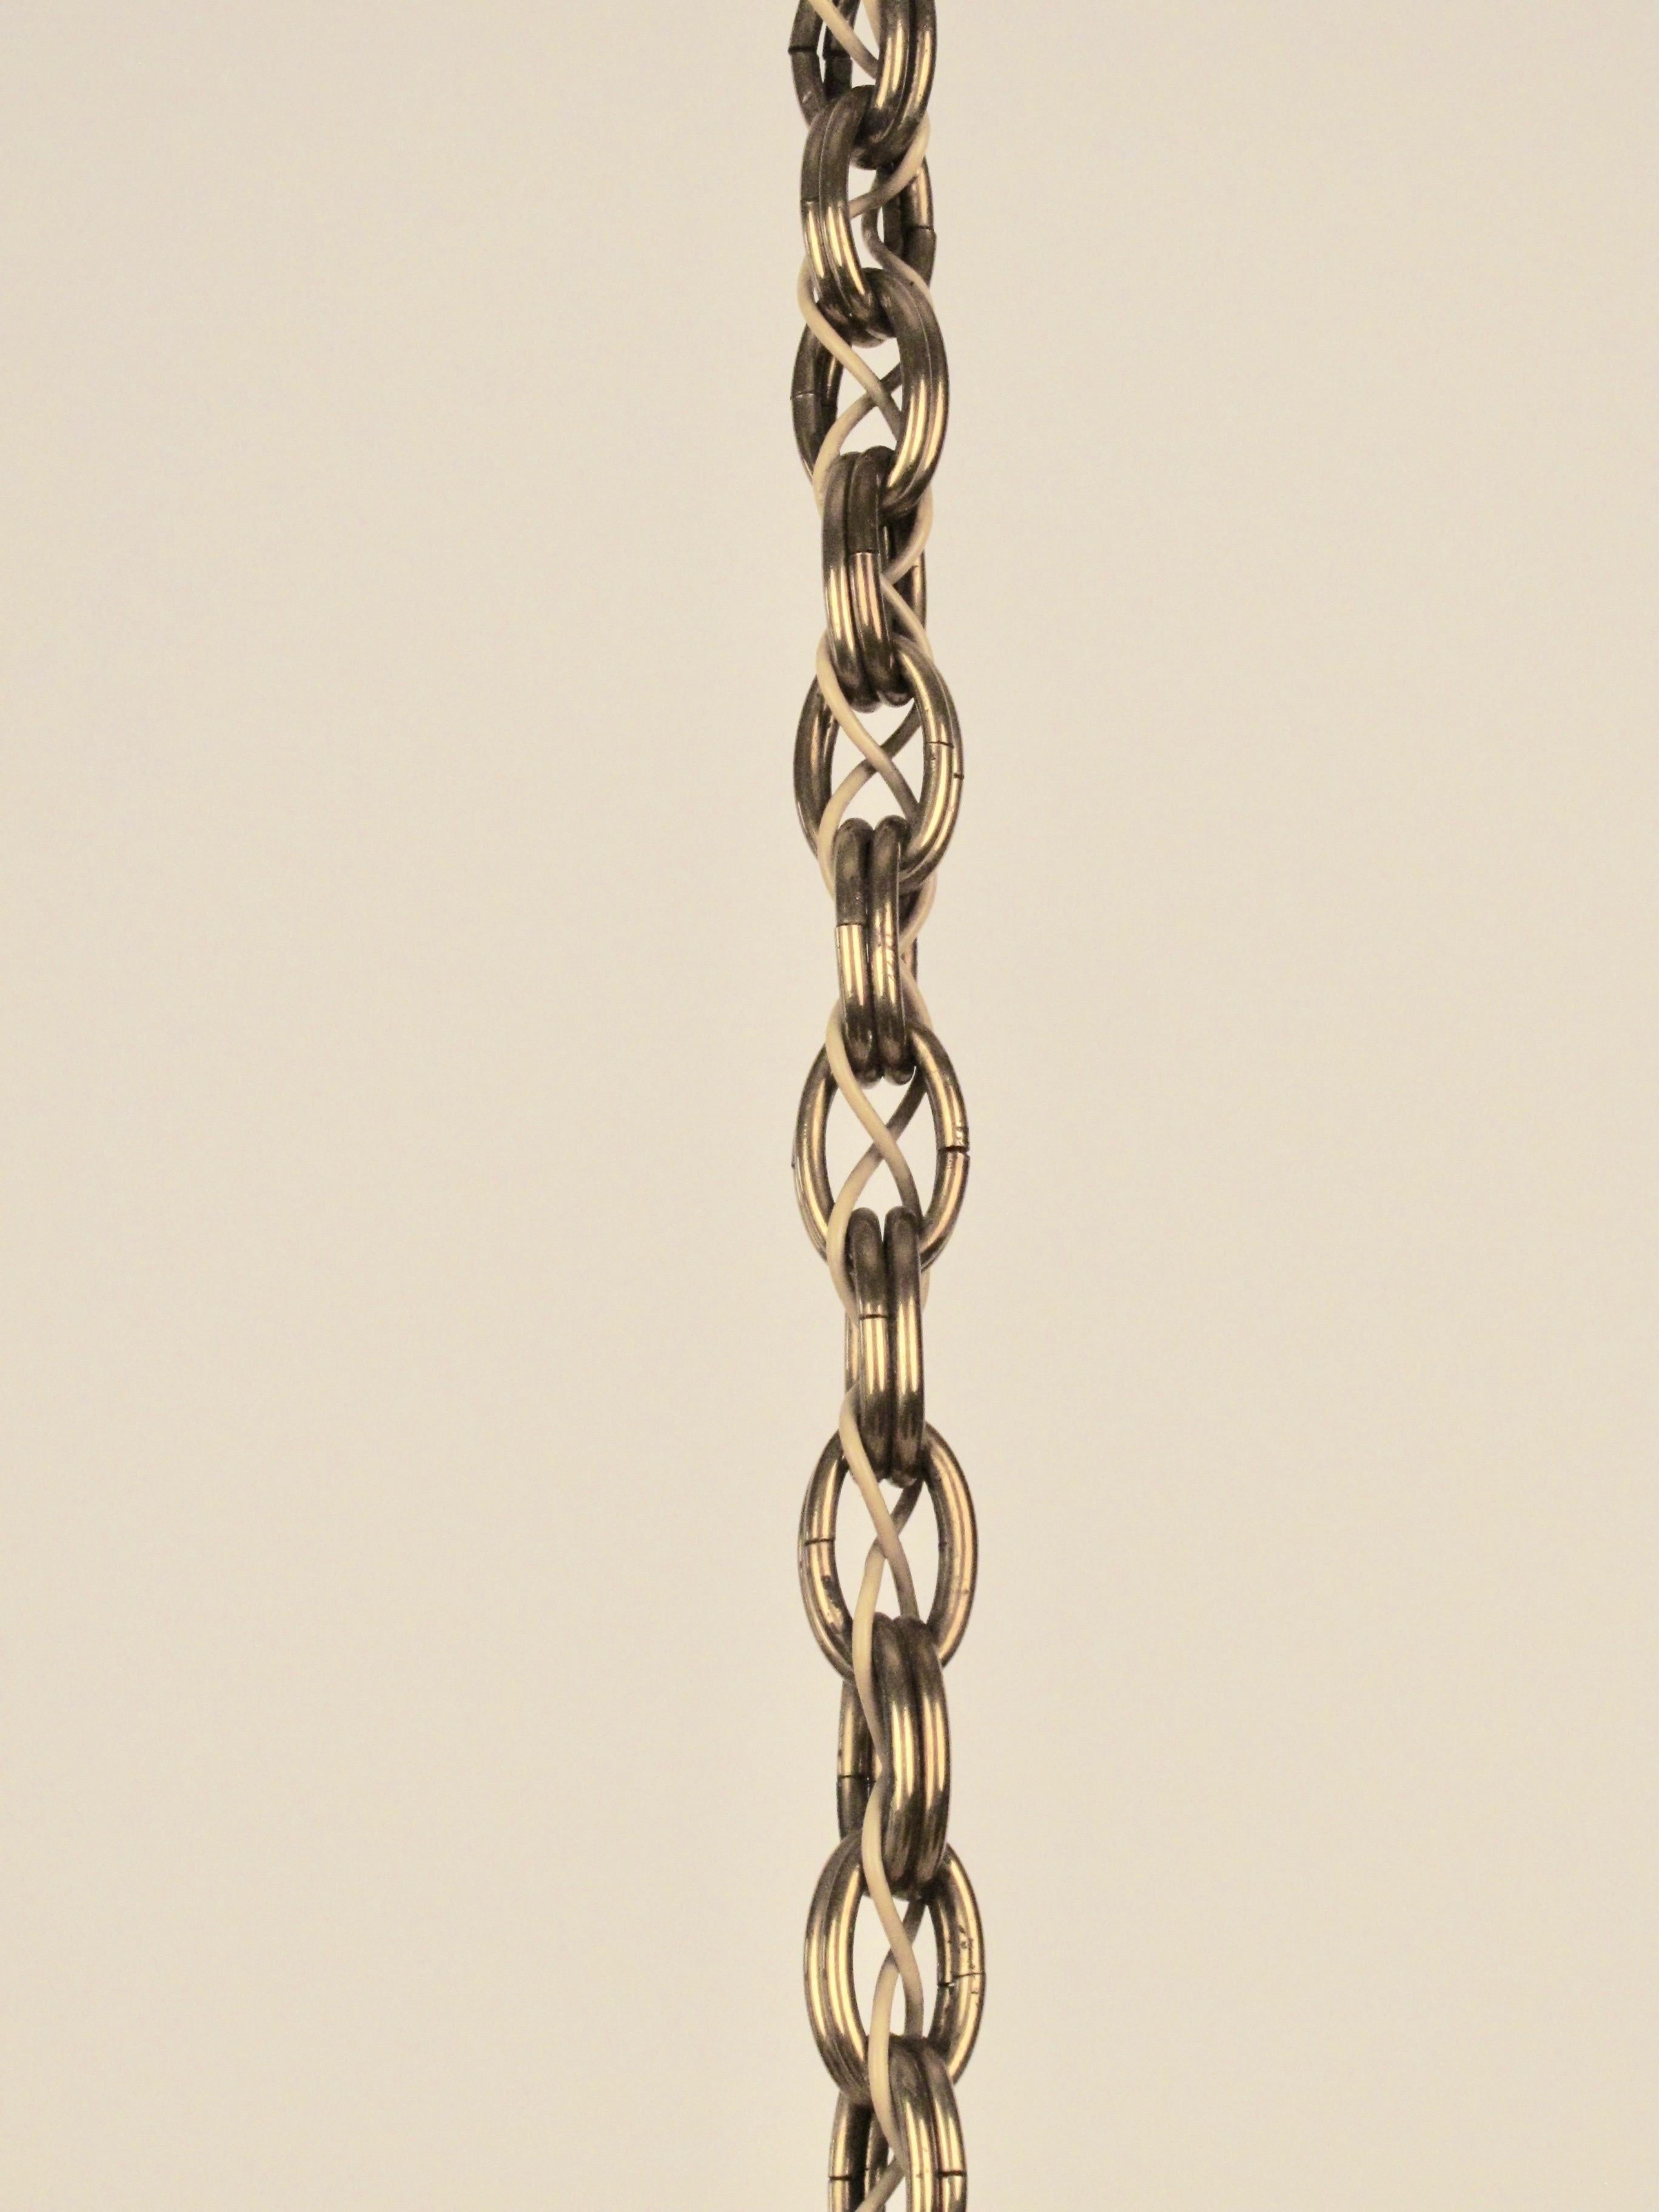 Brass Five Arm Chandelier from Josef Frank, 1930s